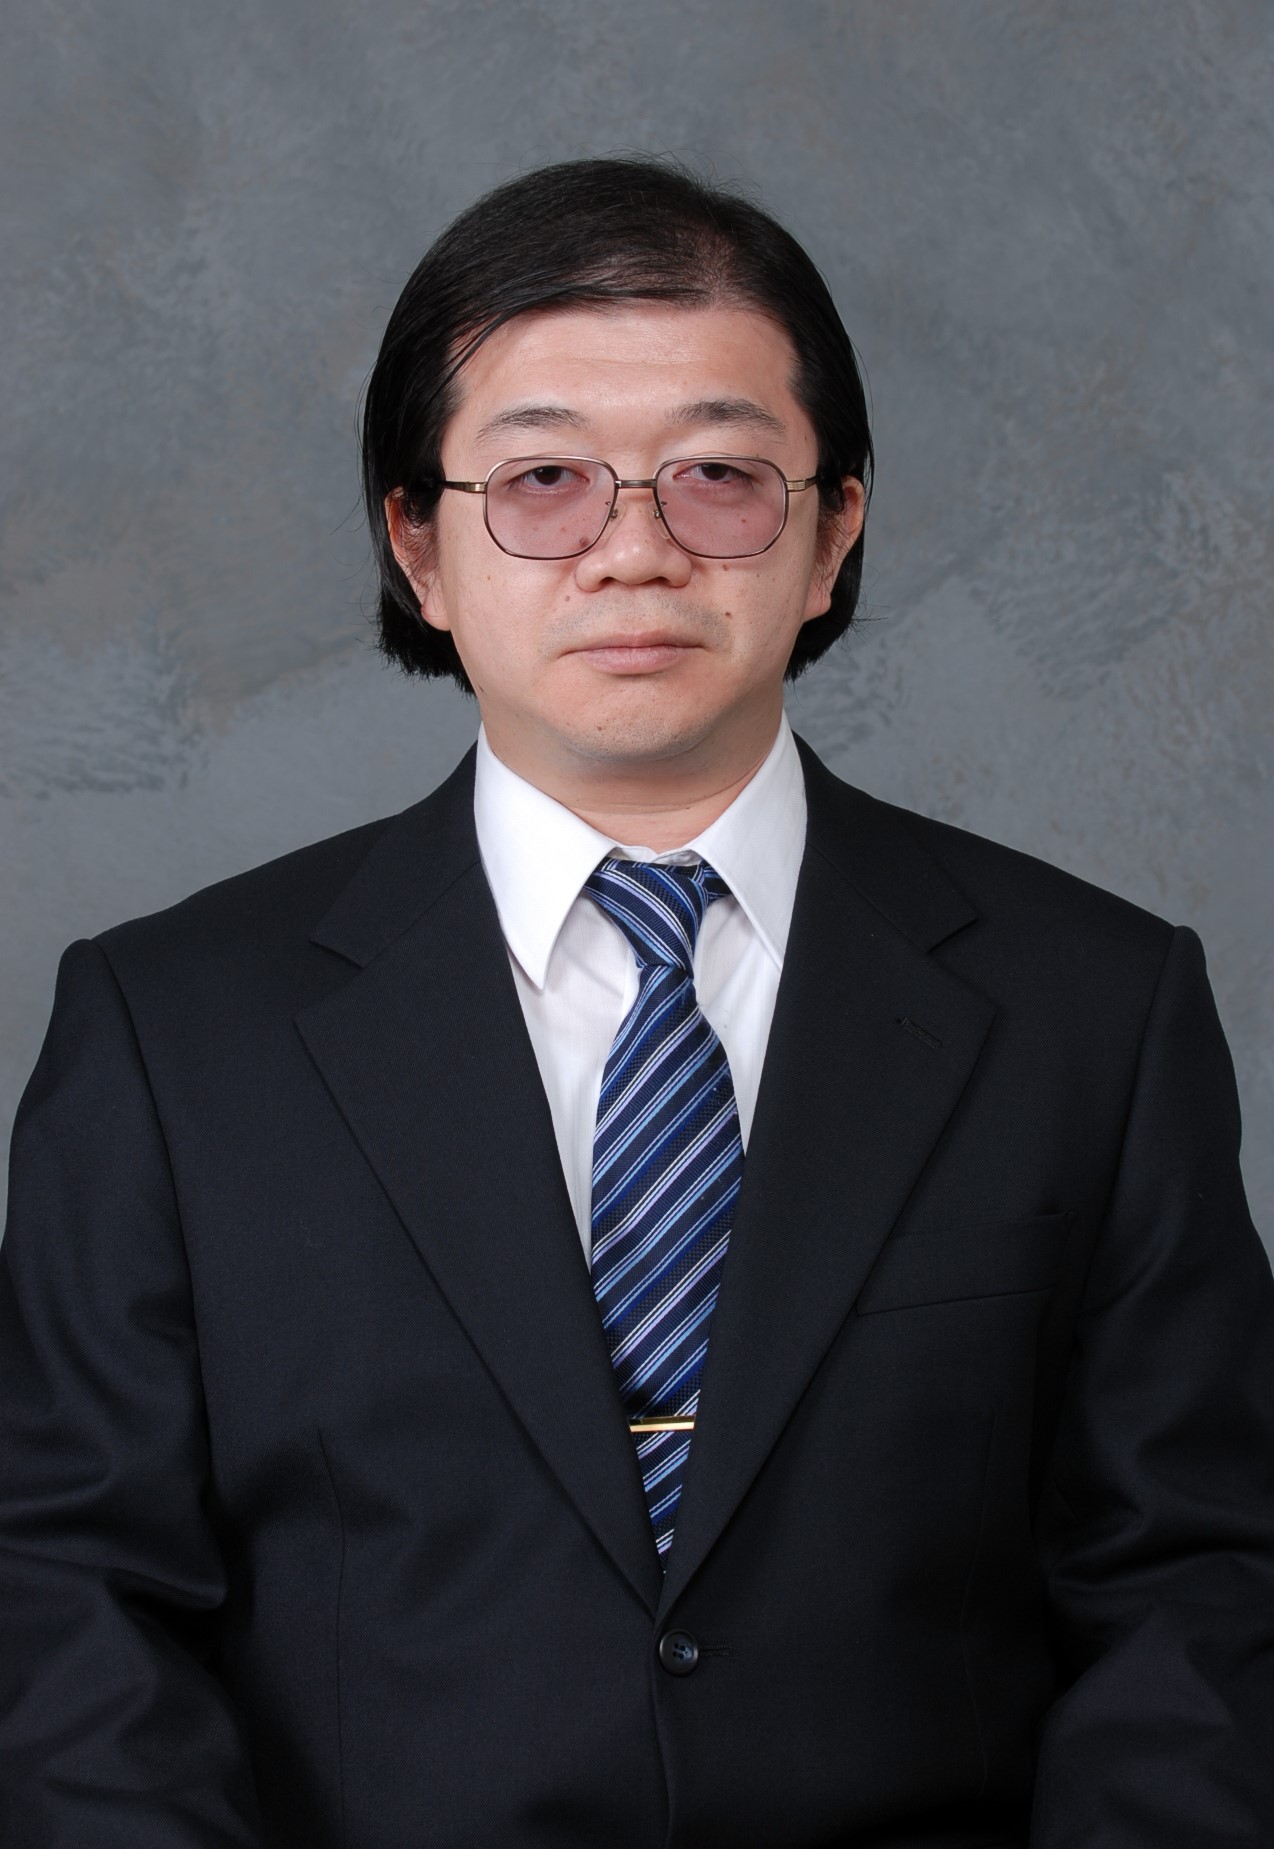 日本大学生産工学部 電気電子工学科 教授 黒岩 孝 教員 kuroiwa takashi